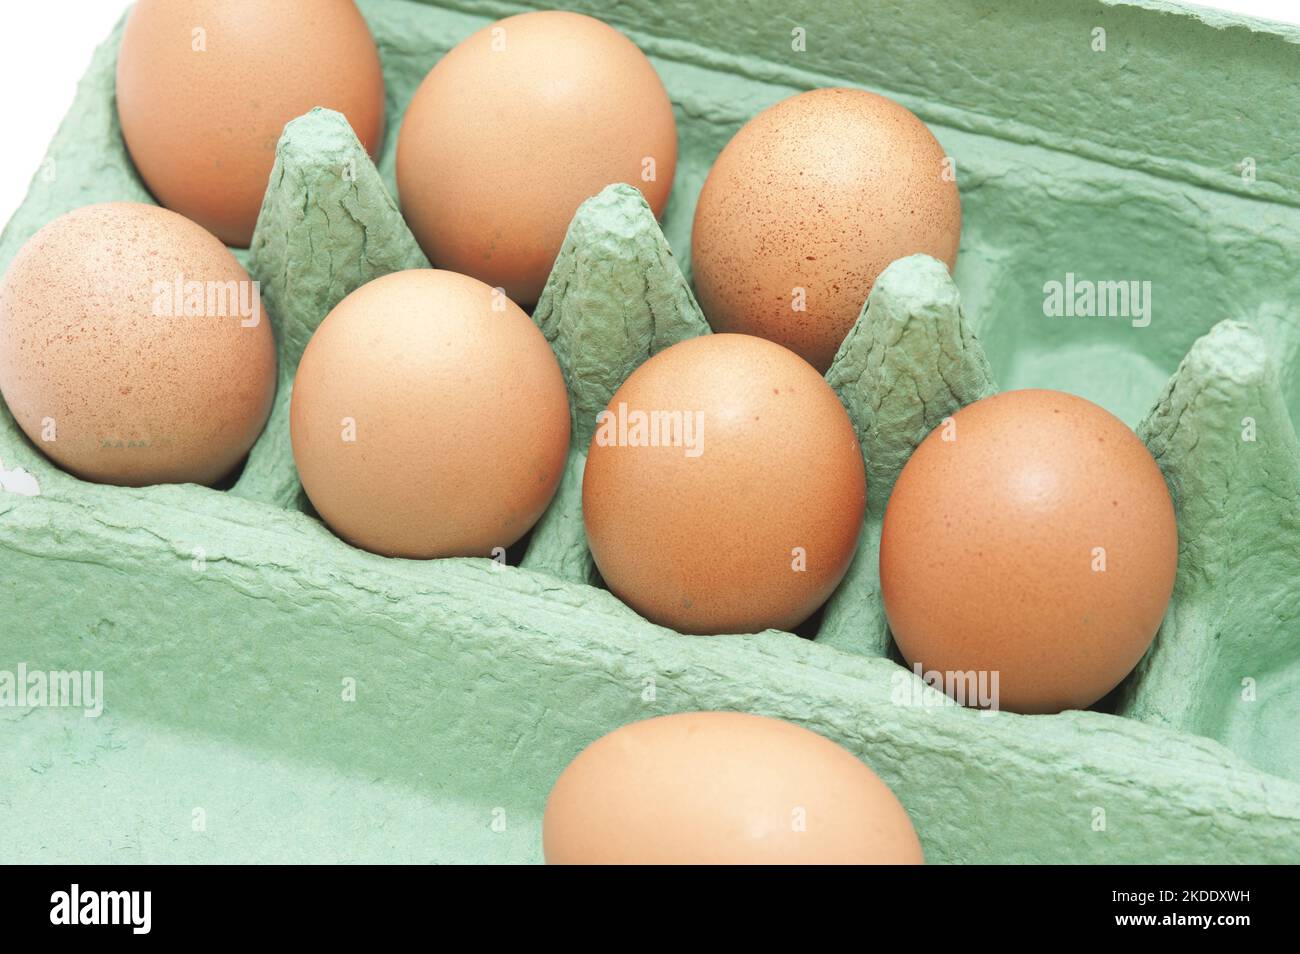 Uova di galline marroni fresche in una confezione di cartone per la vendita al dettaglio, vista ad angolo alto della scatola aperta Foto Stock